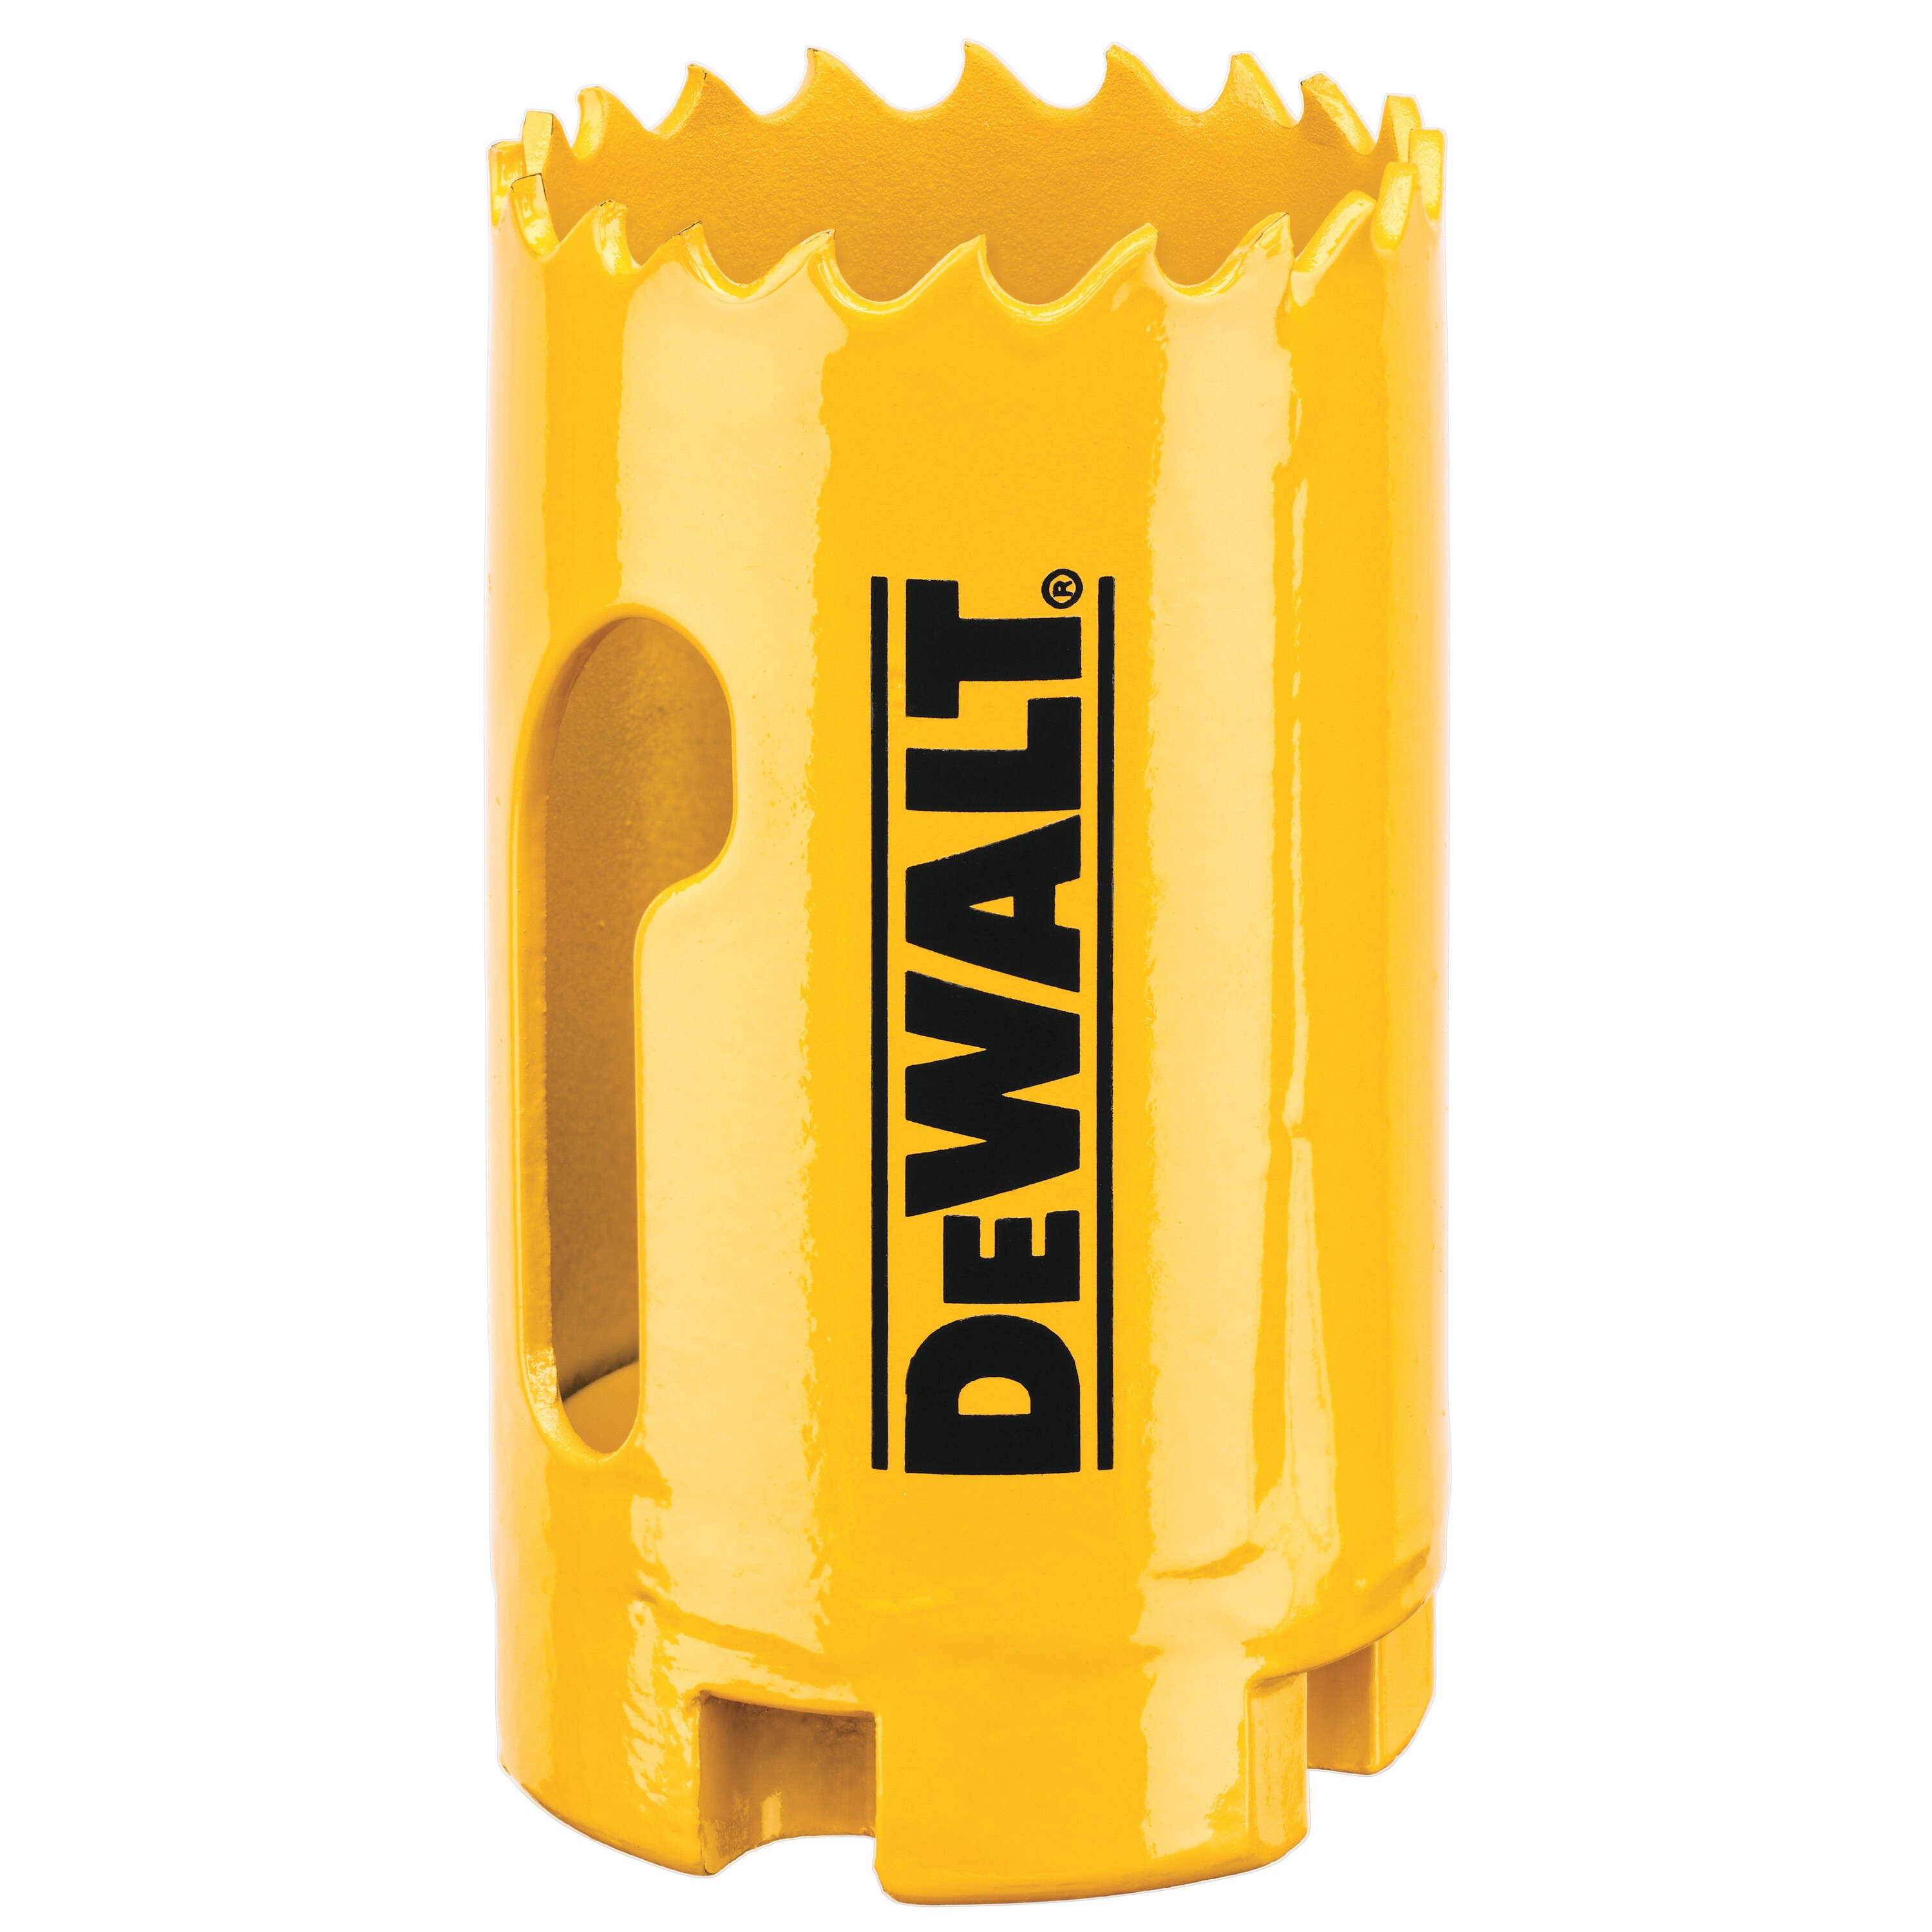 DeWALT DAH180020 Hole Saw, 1-1/4 in Dia, 1-3/4 in D Cutting, 5/8-18 Arbor, 4/5 TPI, HSS Cutting Edge